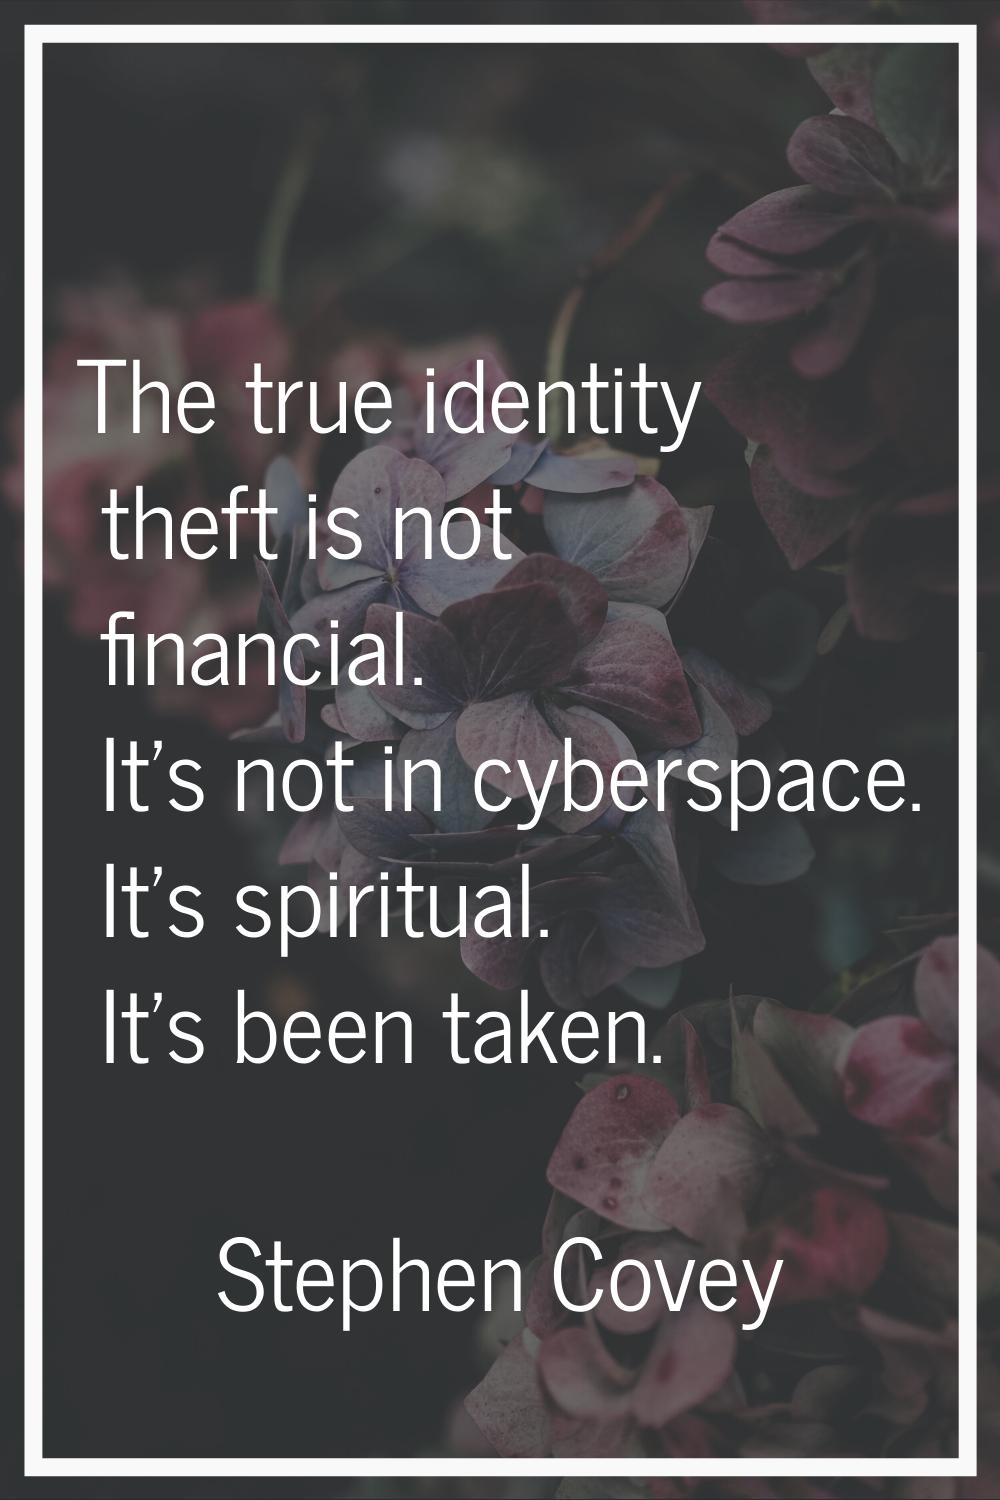 The true identity theft is not financial. It's not in cyberspace. It's spiritual. It's been taken.